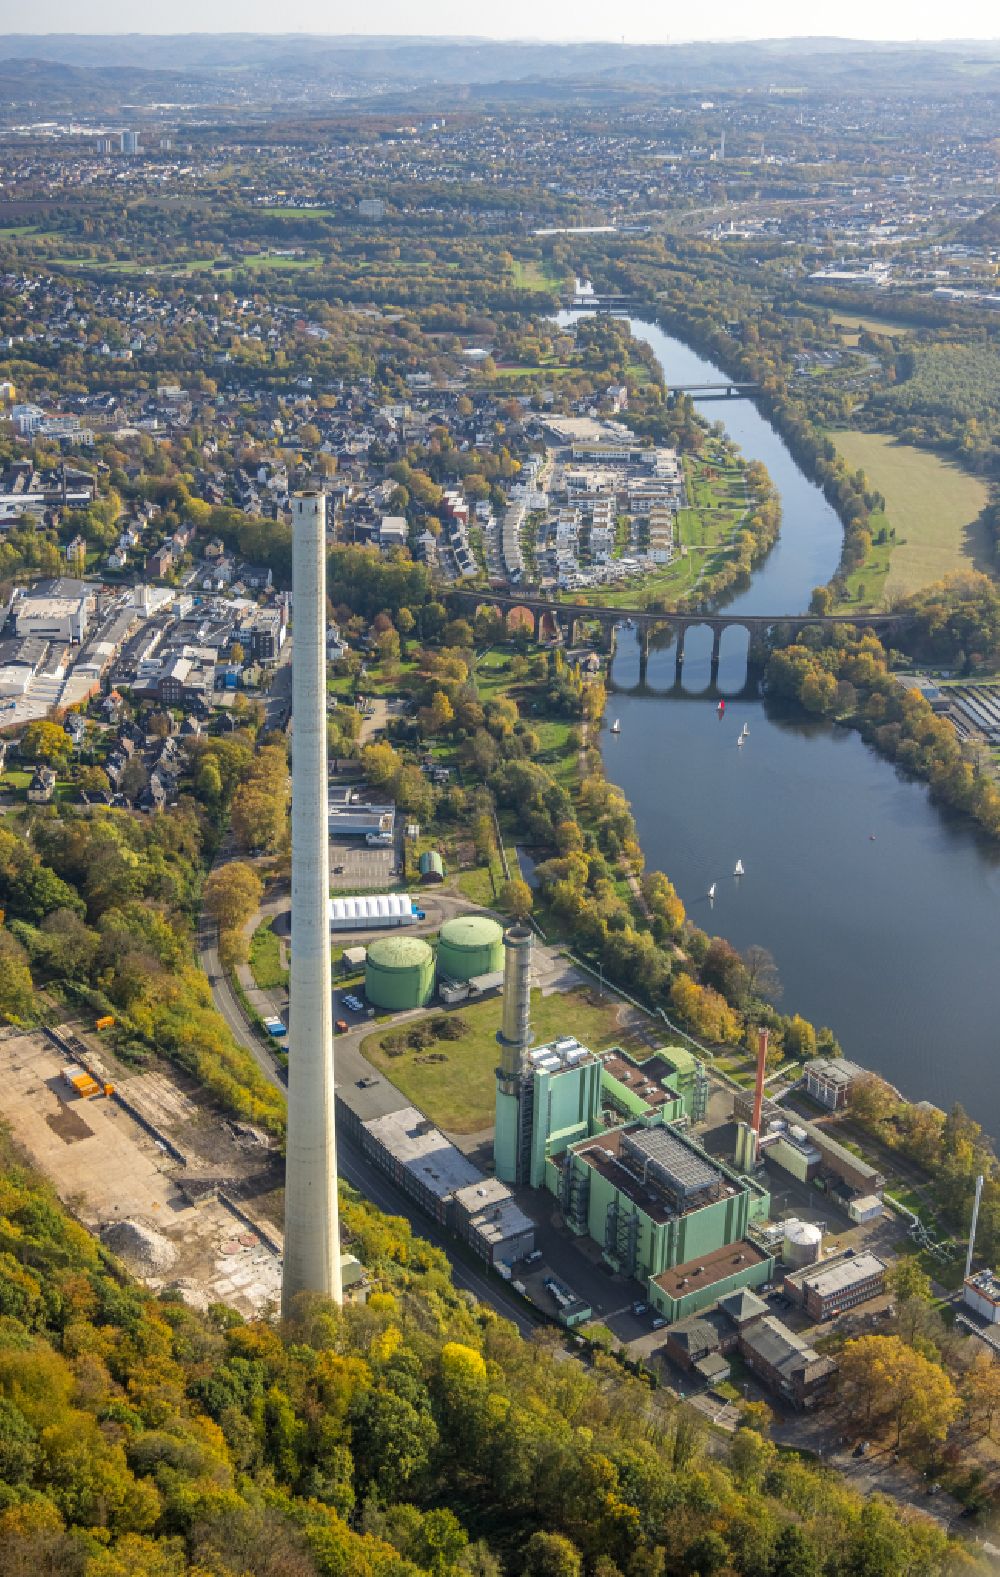 Luftbild Herdecke - Rückbauarbeiten am HKW Heizkraftwerk und Kohlekraftwerk Cuno Kraftwerk in Herdecke im Bundesland Nordrhein-Westfalen, Deutschland